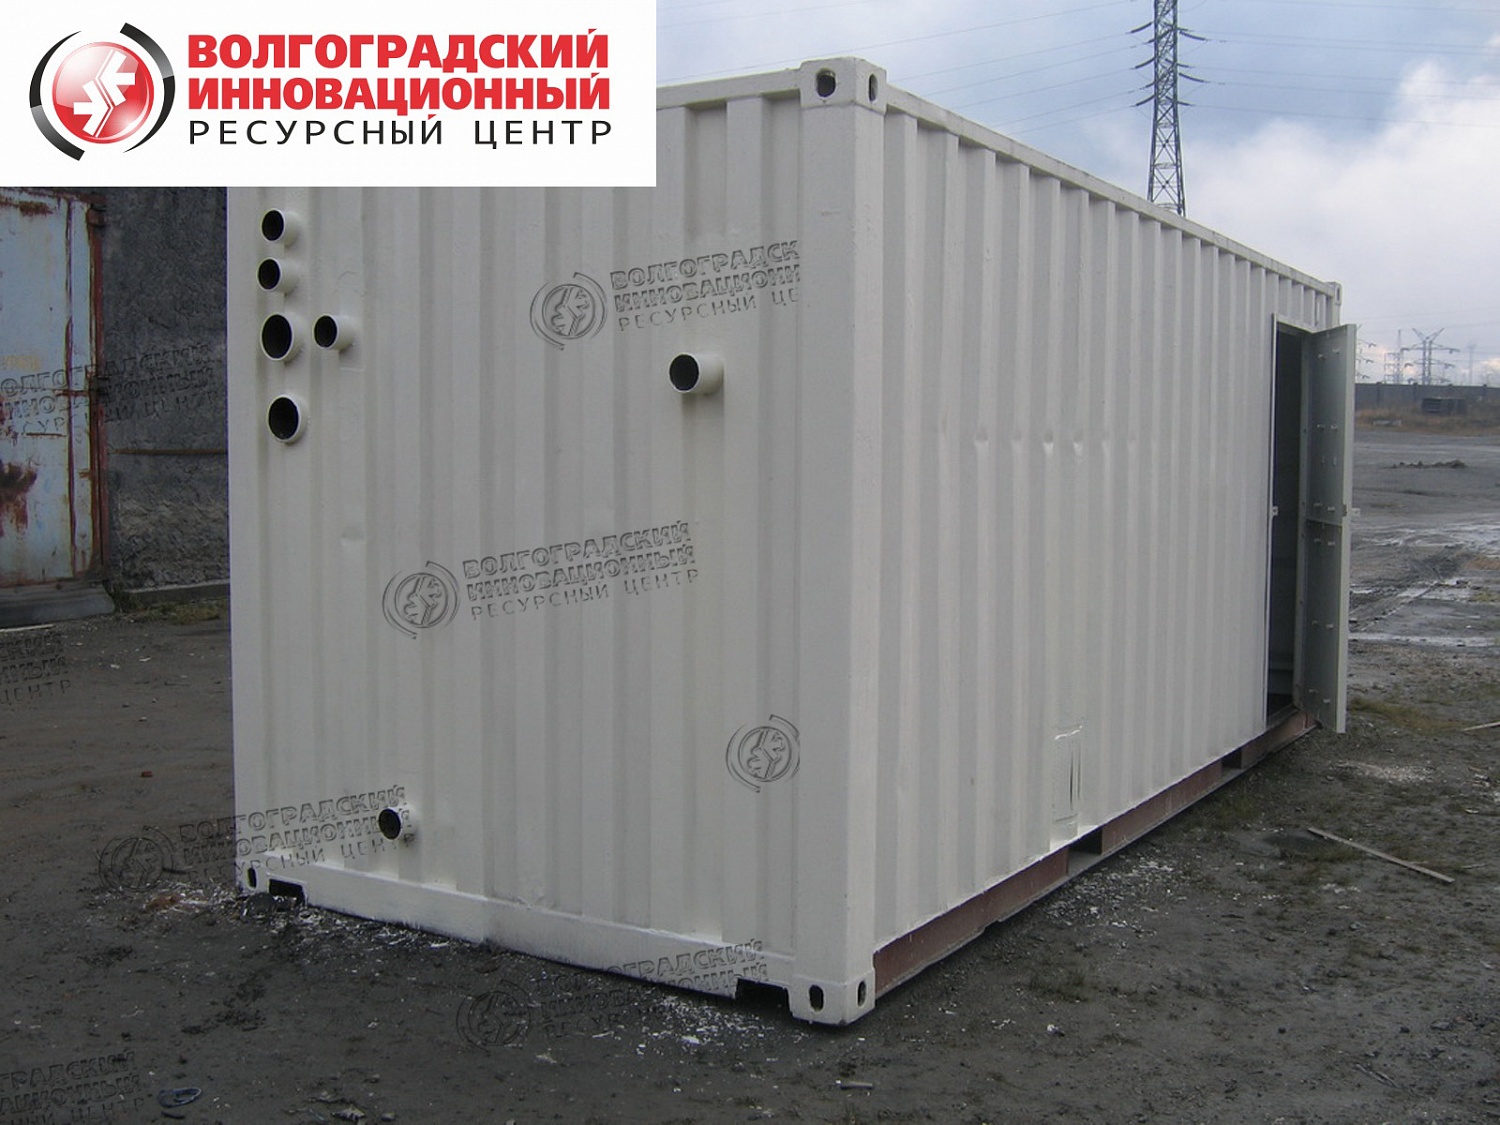 Екатеринбург.Теплоизоляция сухогрузных контейнера